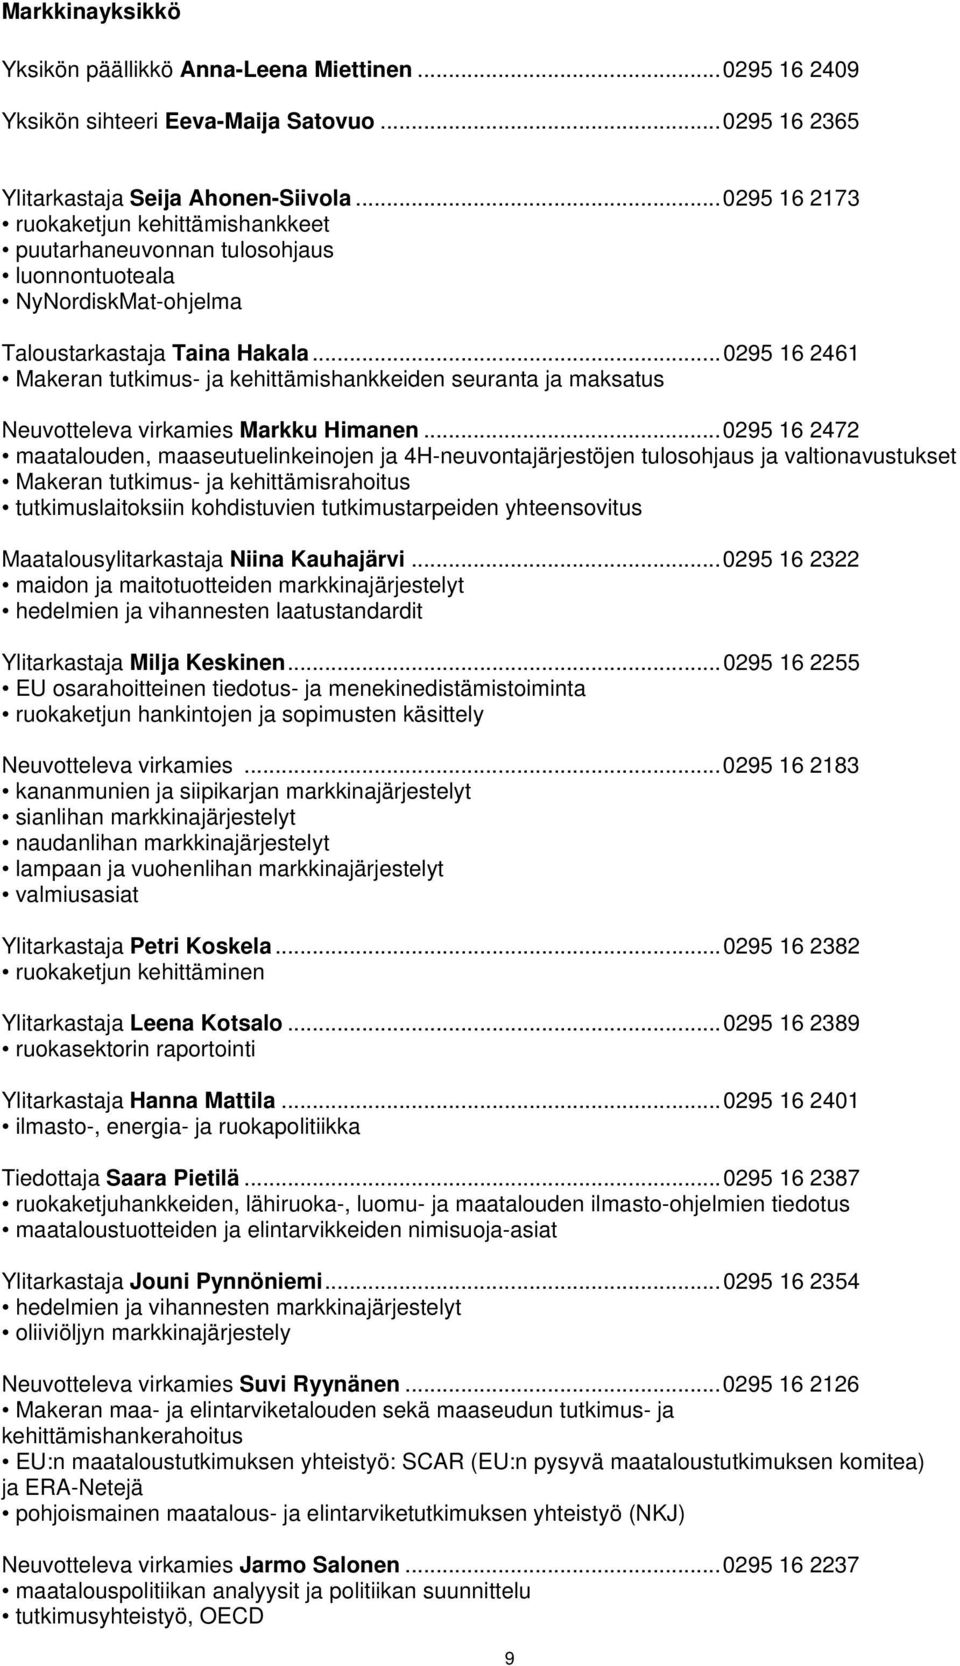 .. 0295 16 2461 Makeran tutkimus- ja kehittämishankkeiden seuranta ja maksatus Neuvotteleva virkamies Markku Himanen.